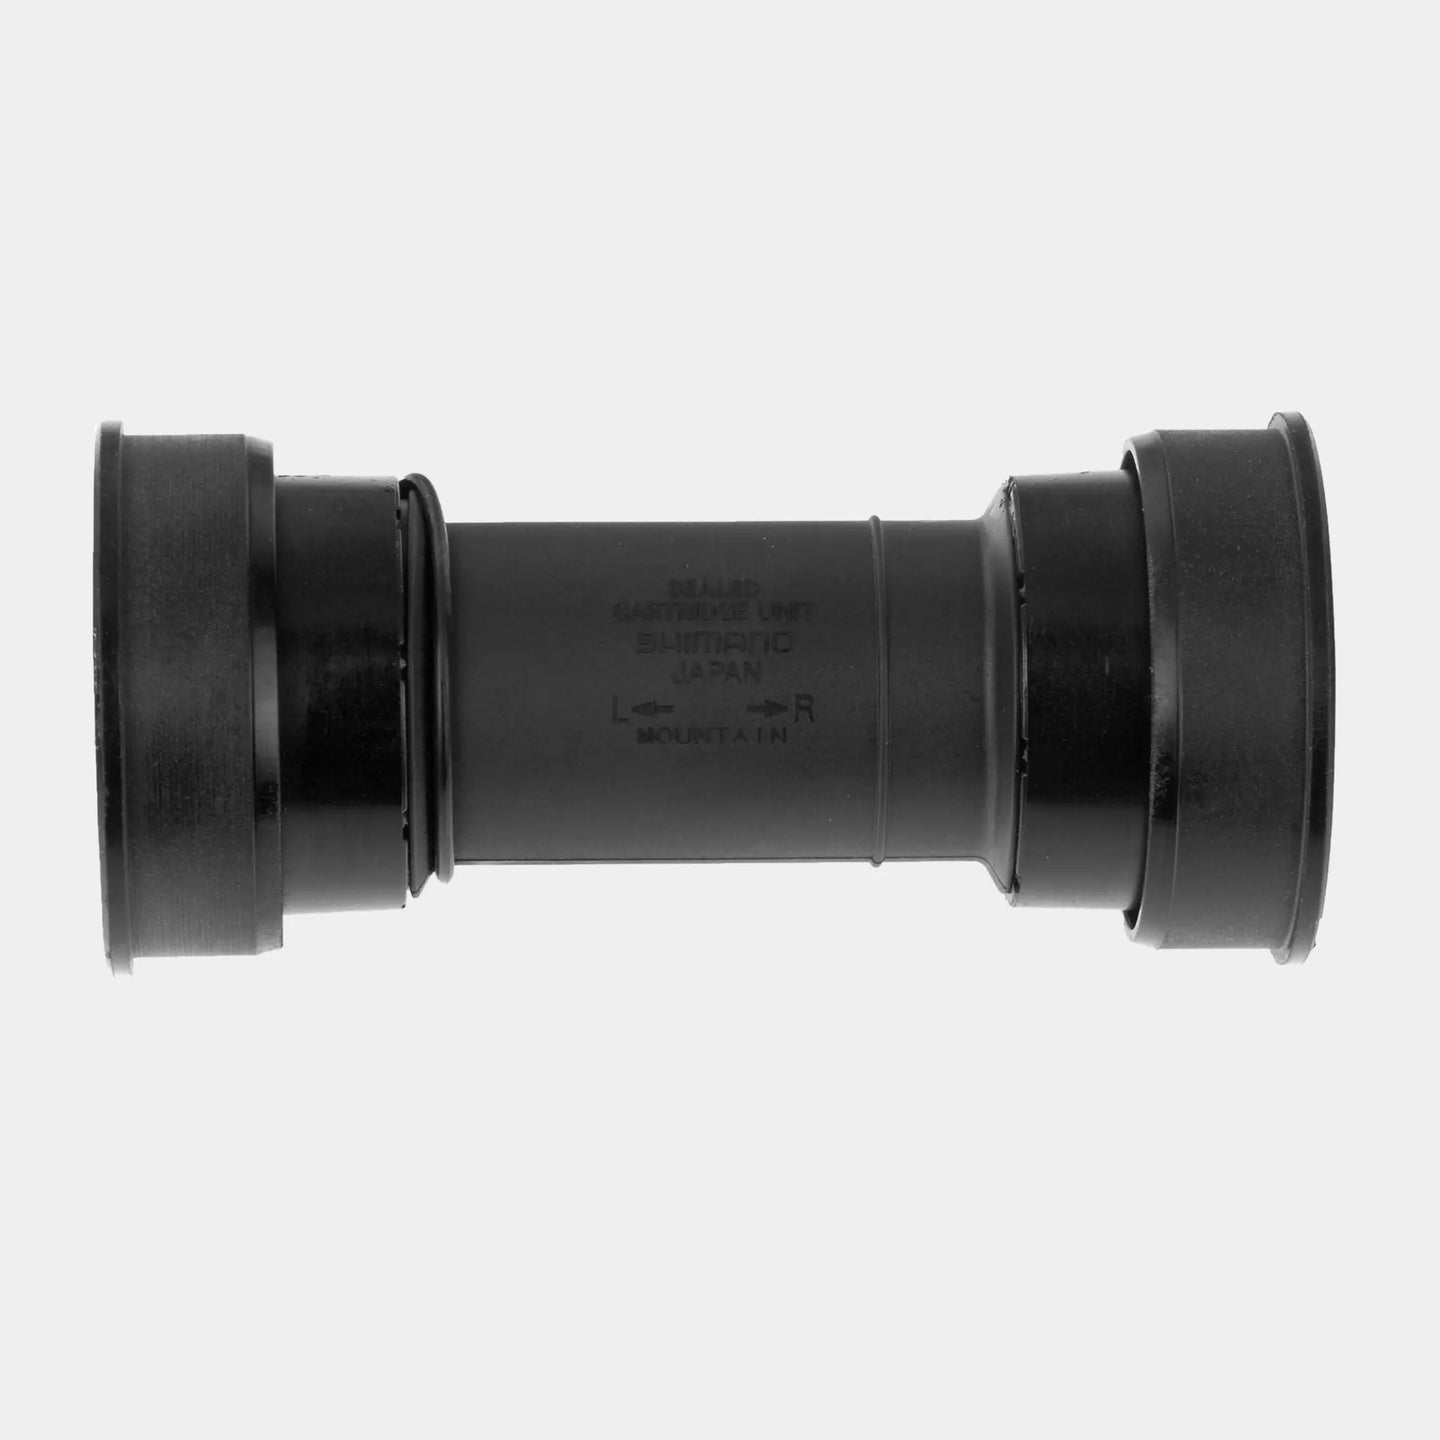 Shimano Deore XT BB-MT800 89.5/92mm Press Fit